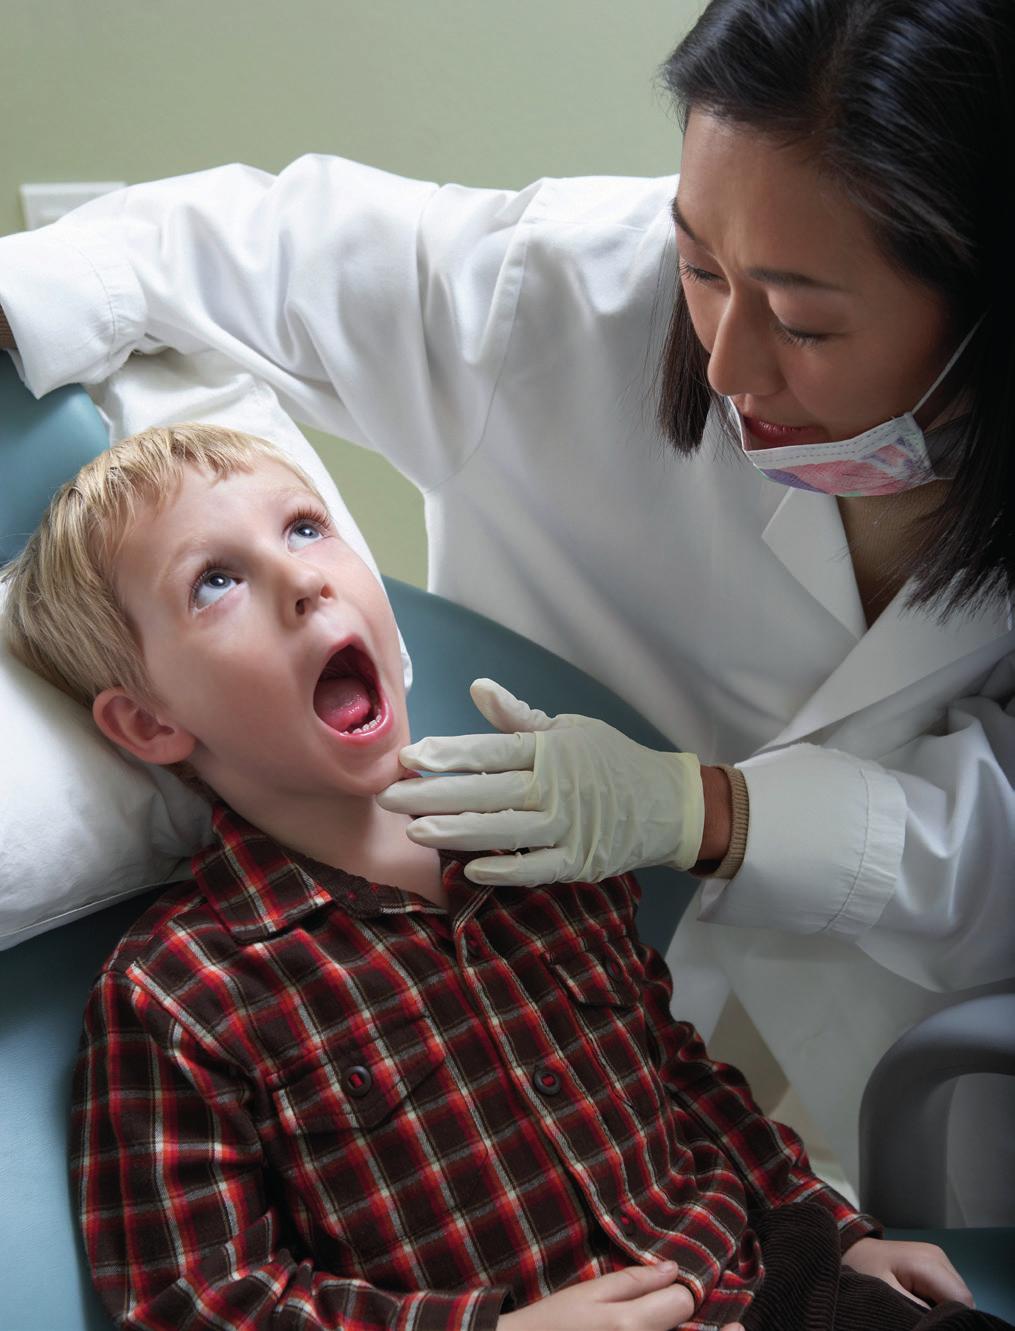 Tannhelsekontroll er gratis for barn under 18 år i den offentlige tannhelsetjenesten.